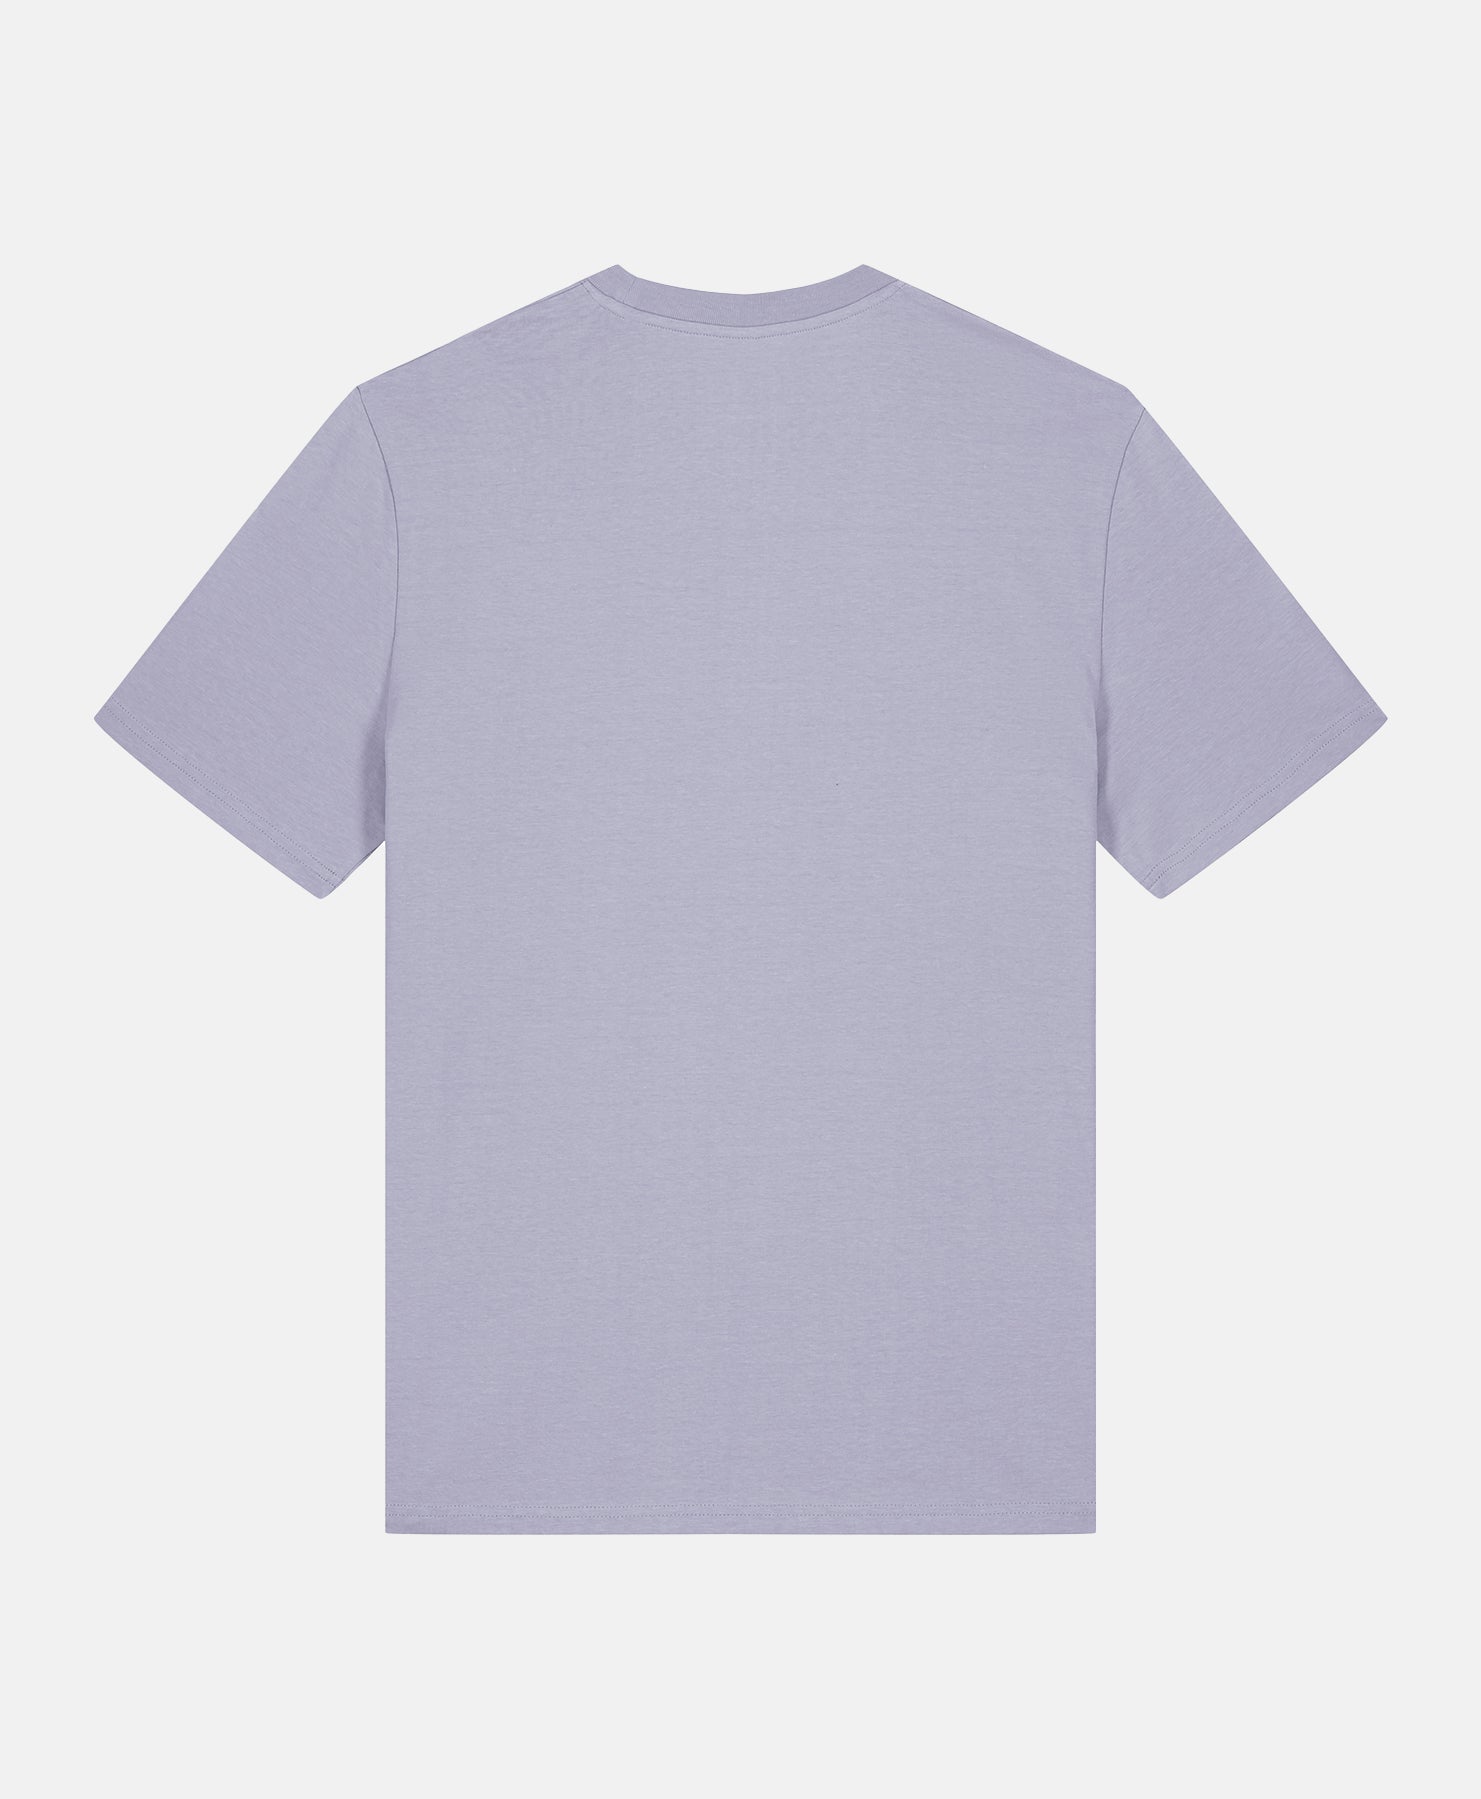 Staffordshire Bull Terrier T-Shirt Lavender